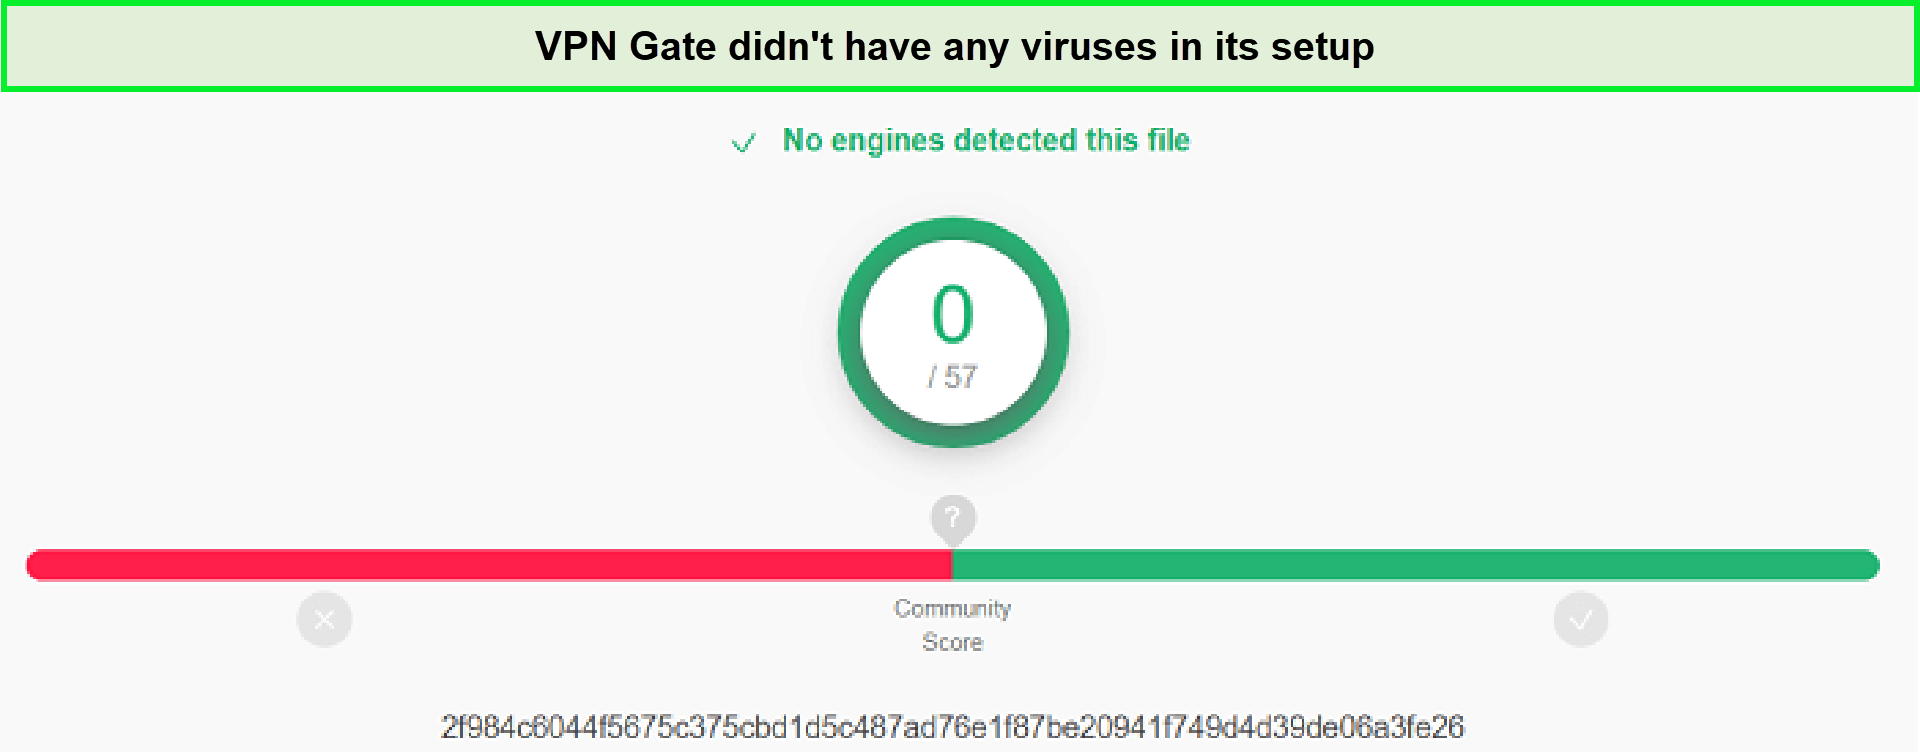 Virus-Test-in-Germany-VPN-Gate